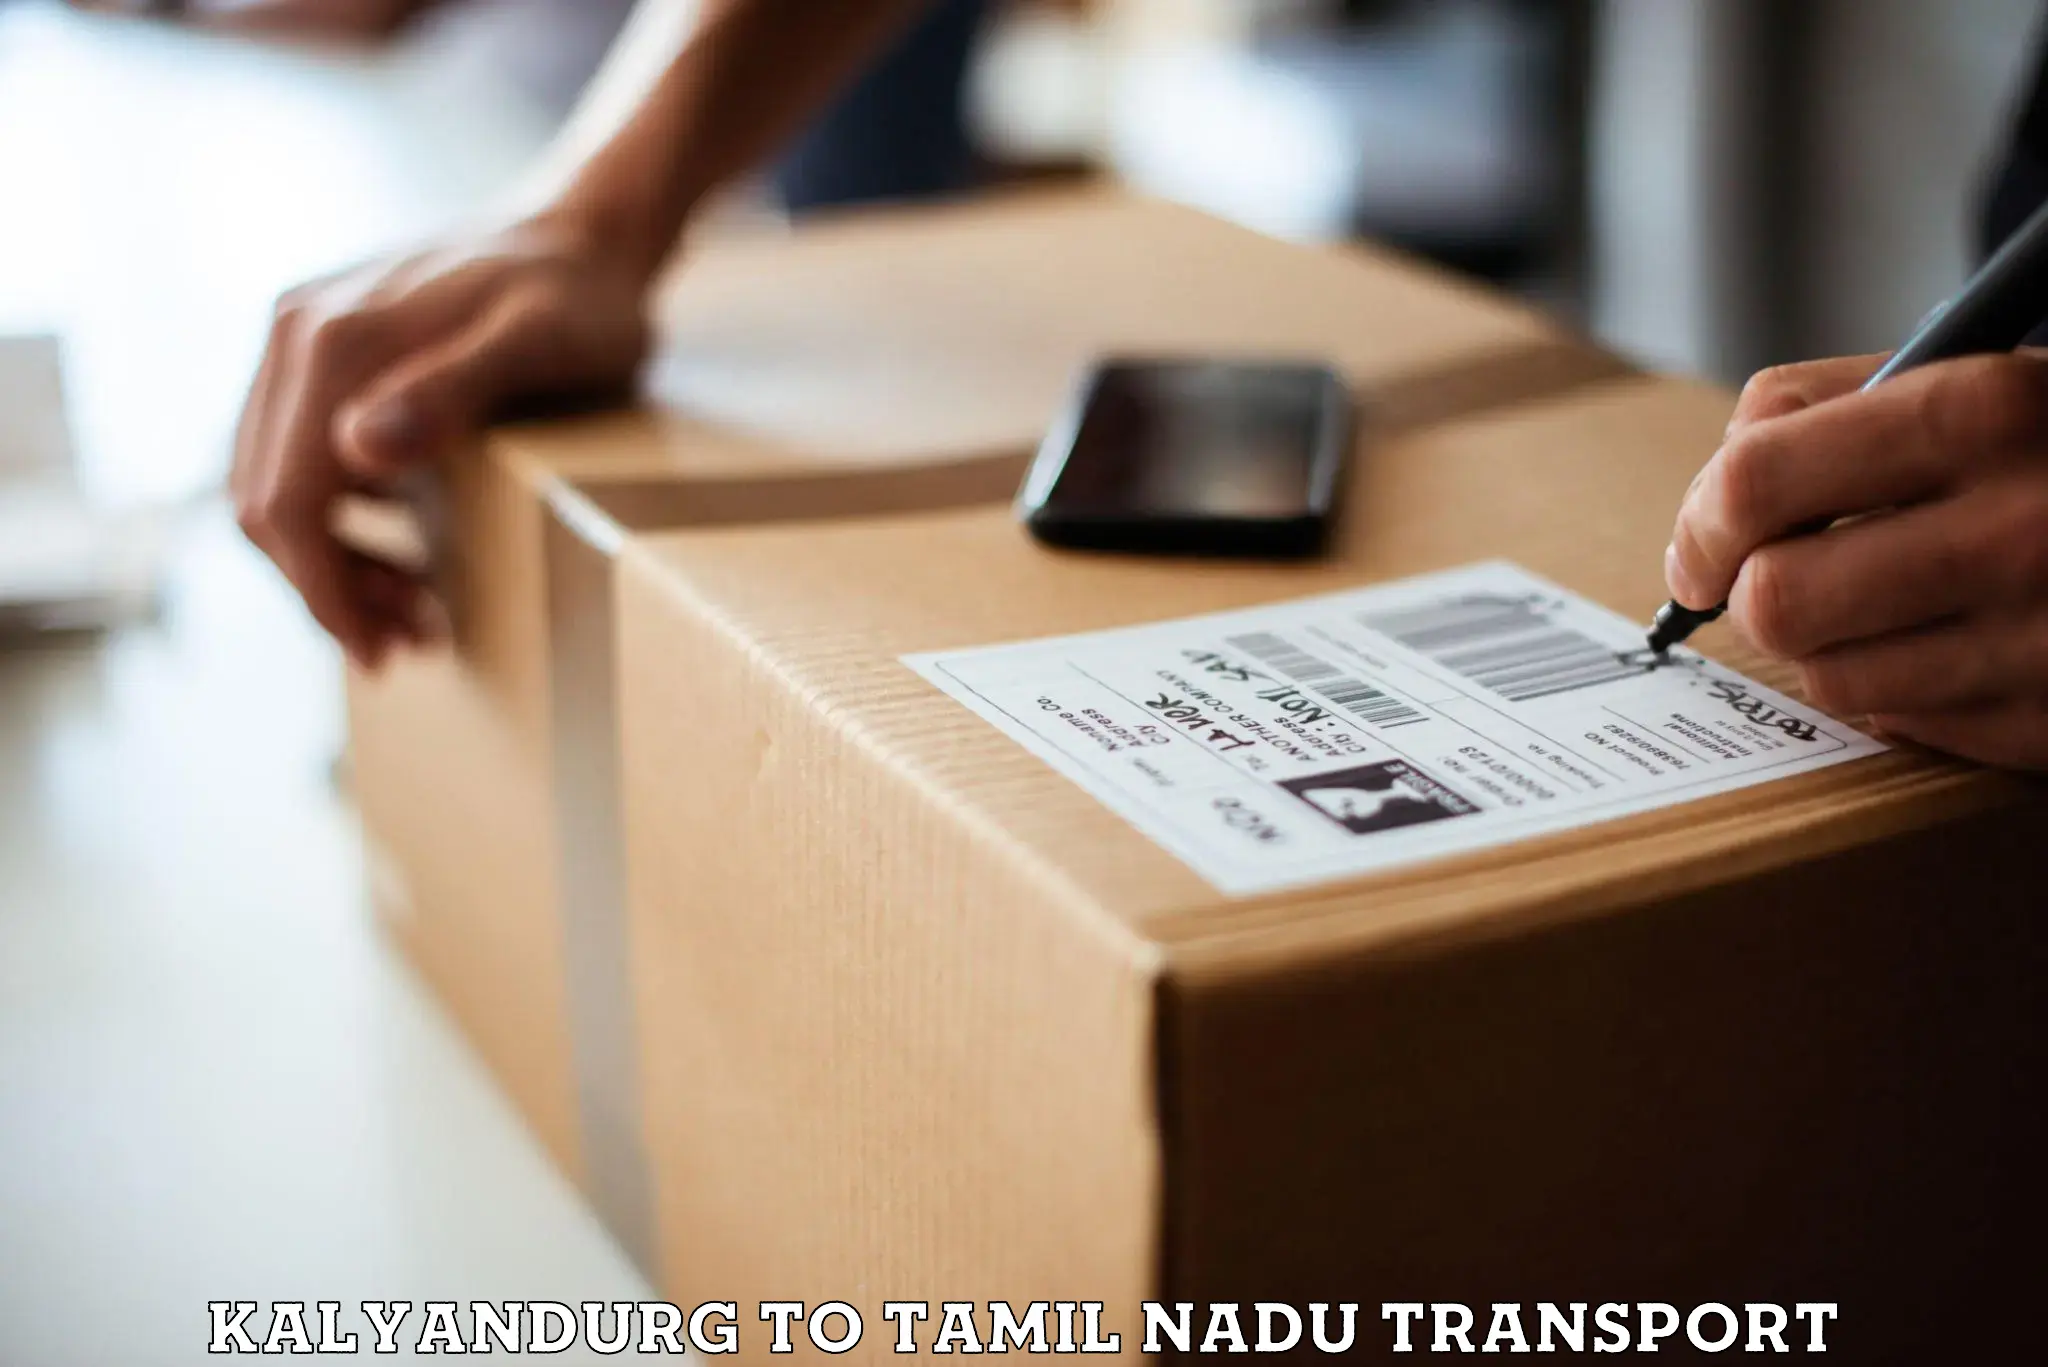 Pick up transport service Kalyandurg to Omalur